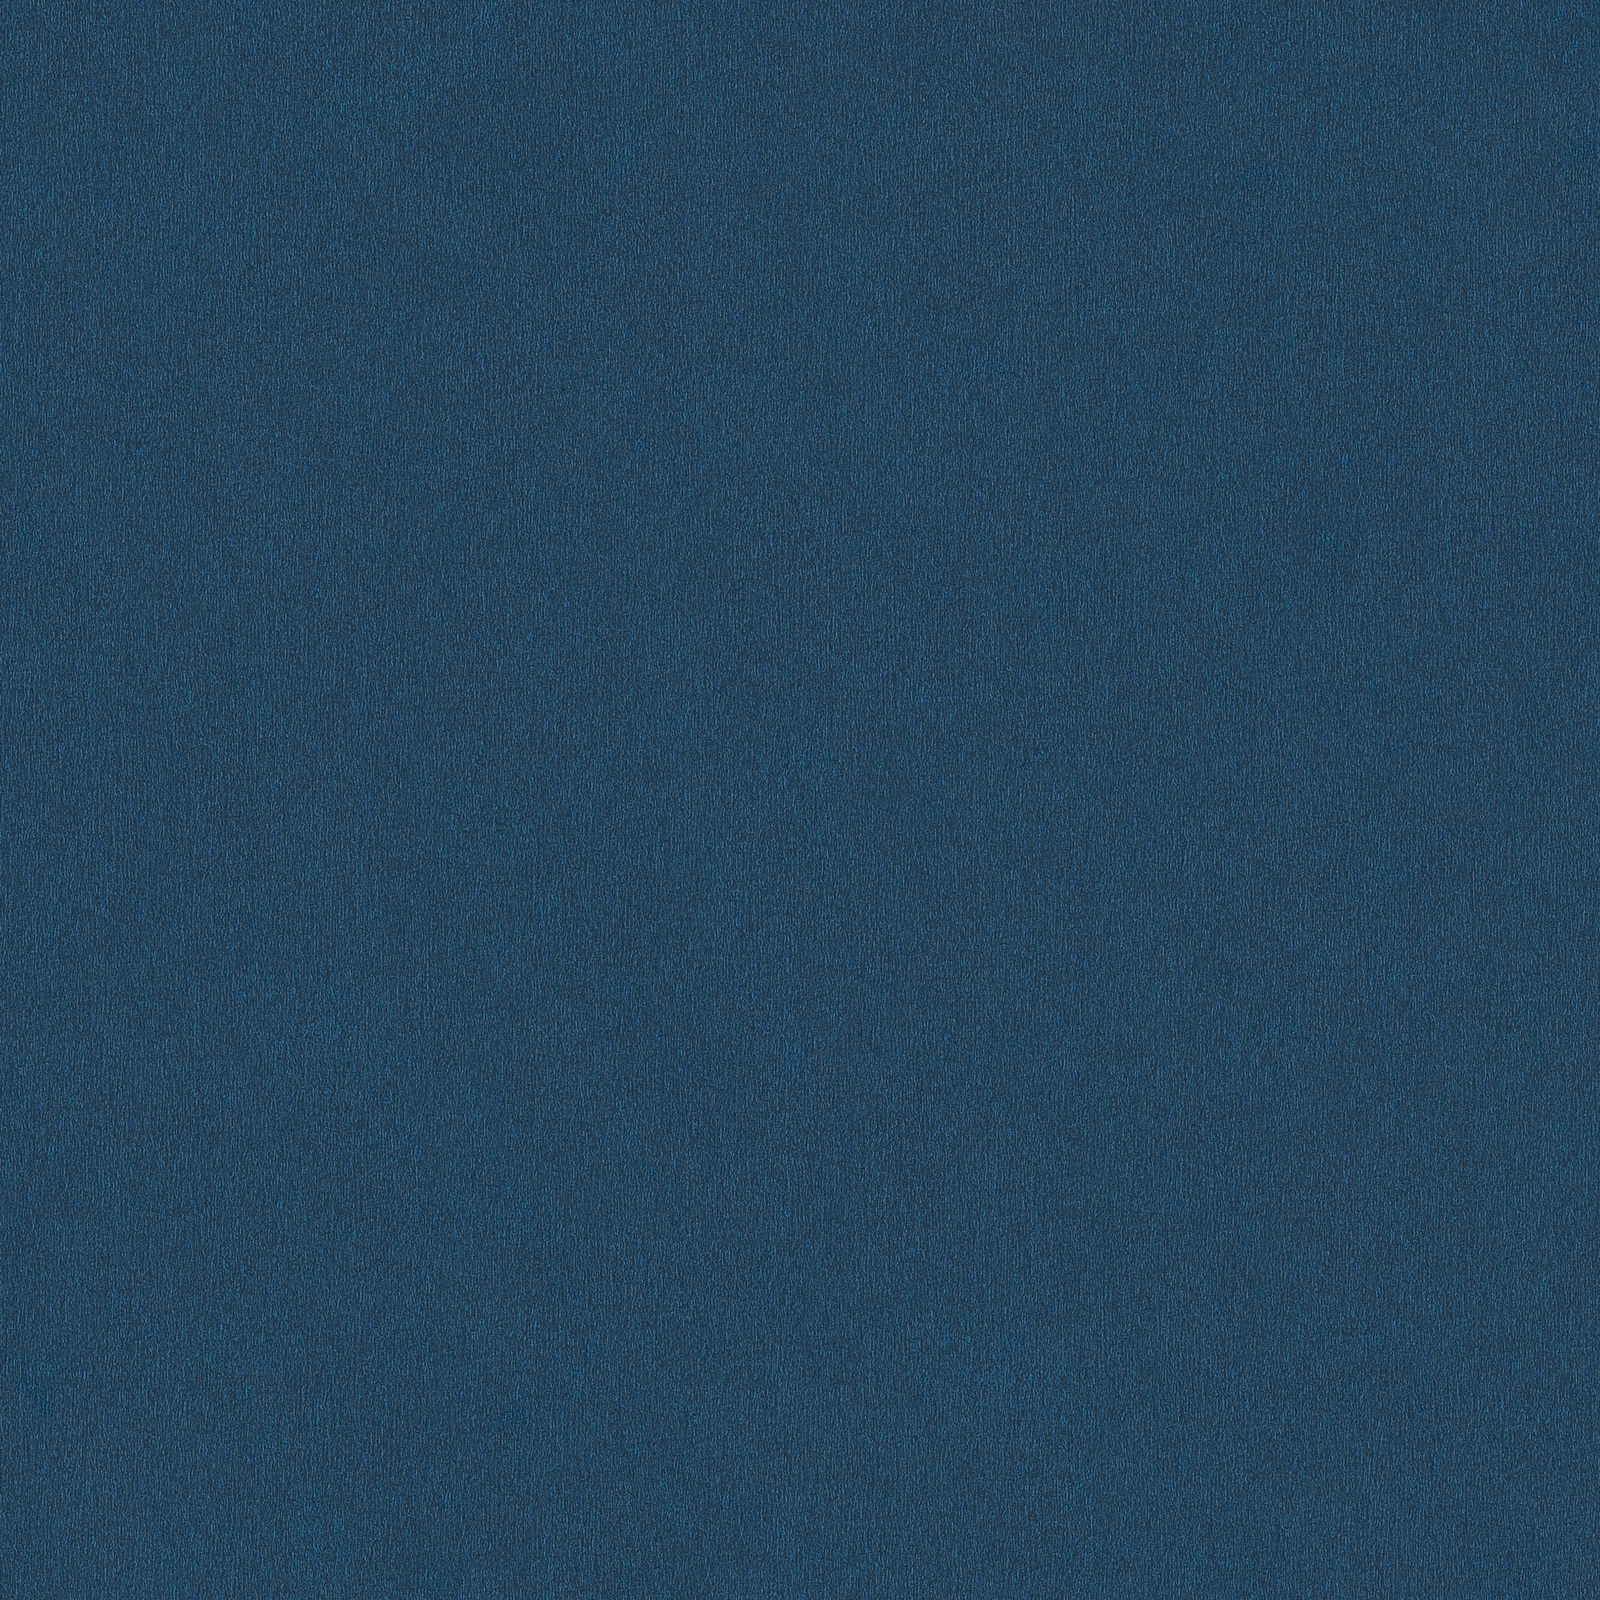             Tapete Dunkelblau, Uni Marine Blau mit Farbschraffur
        